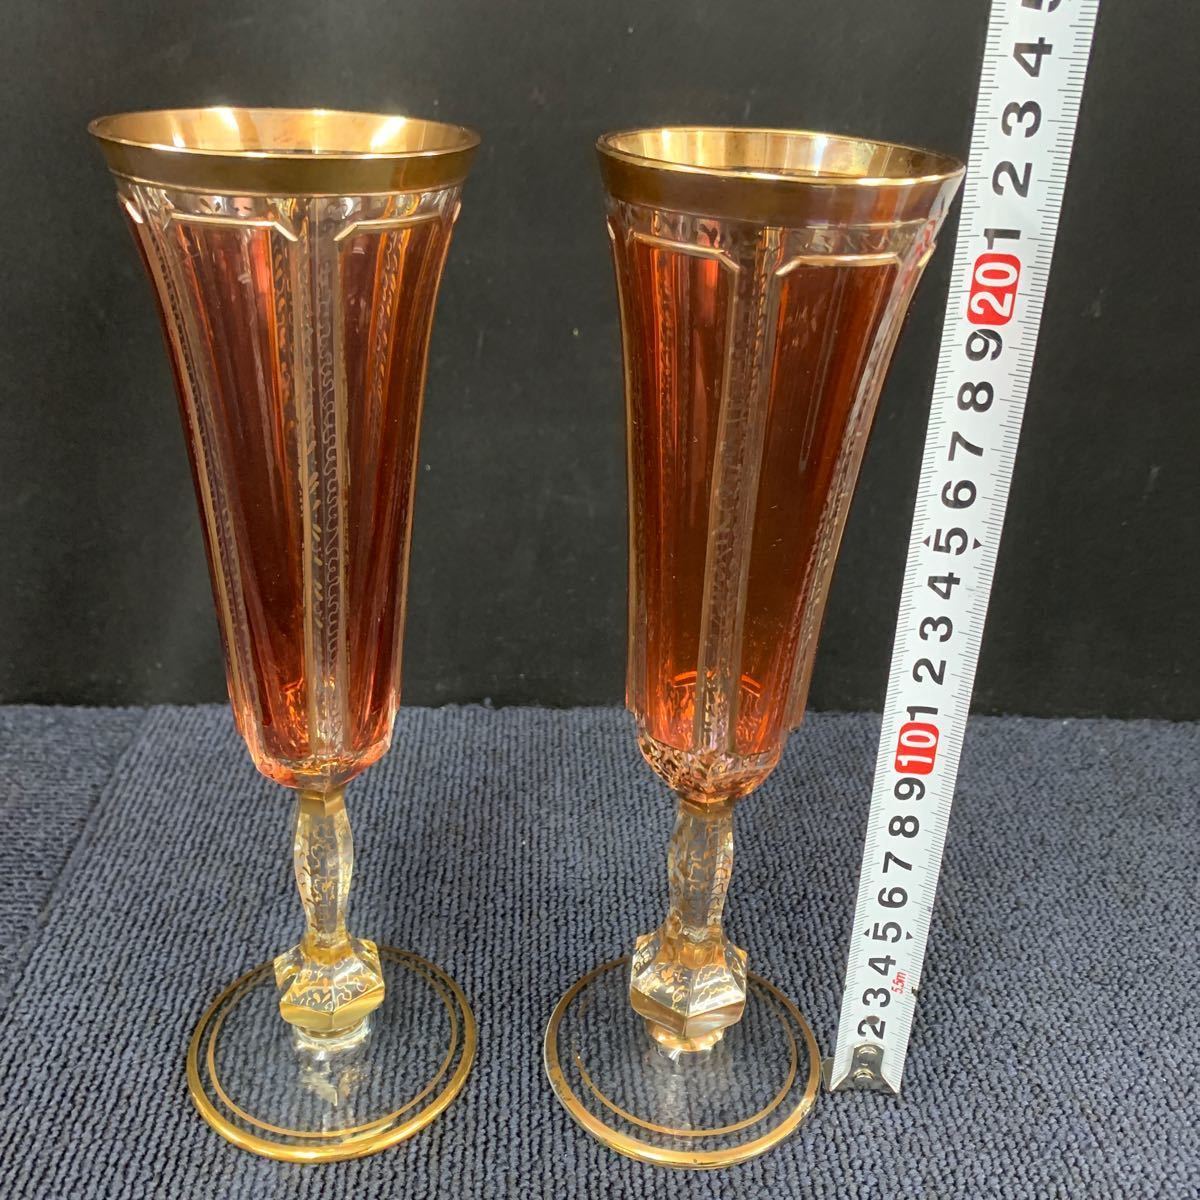 【海外購入品】ボヘミアガラス ワイングラス チェコ ガラス シャンパングラス ヴィンテージ W23_画像2